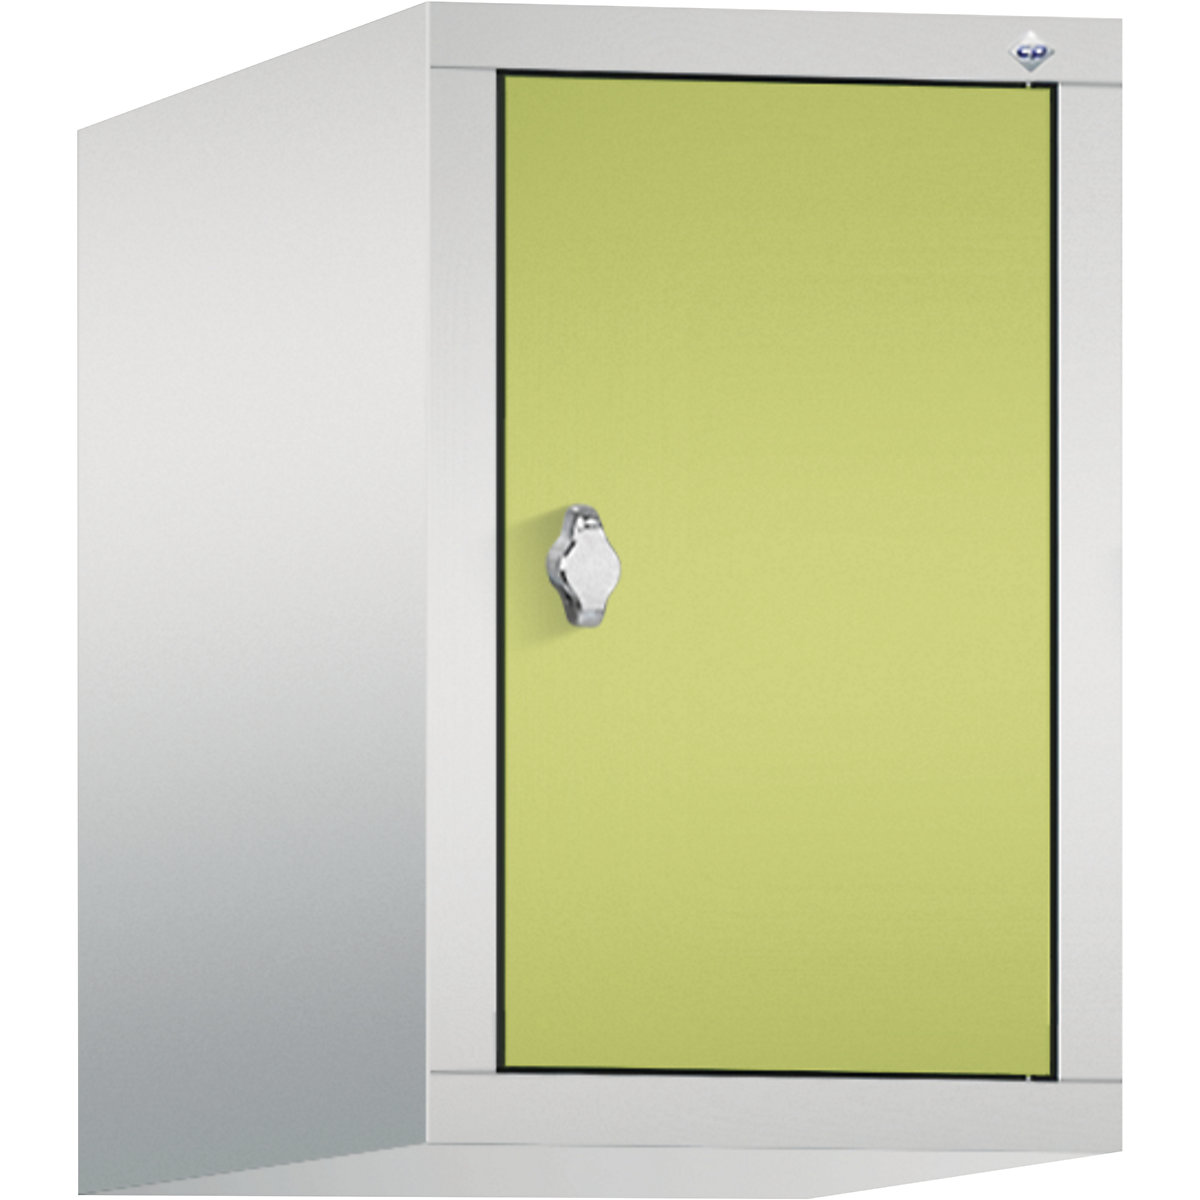 C+P – Altillo CLASSIC, 1 compartimento, anchura de compartimento 300 mm, gris luminoso / verde pistacho